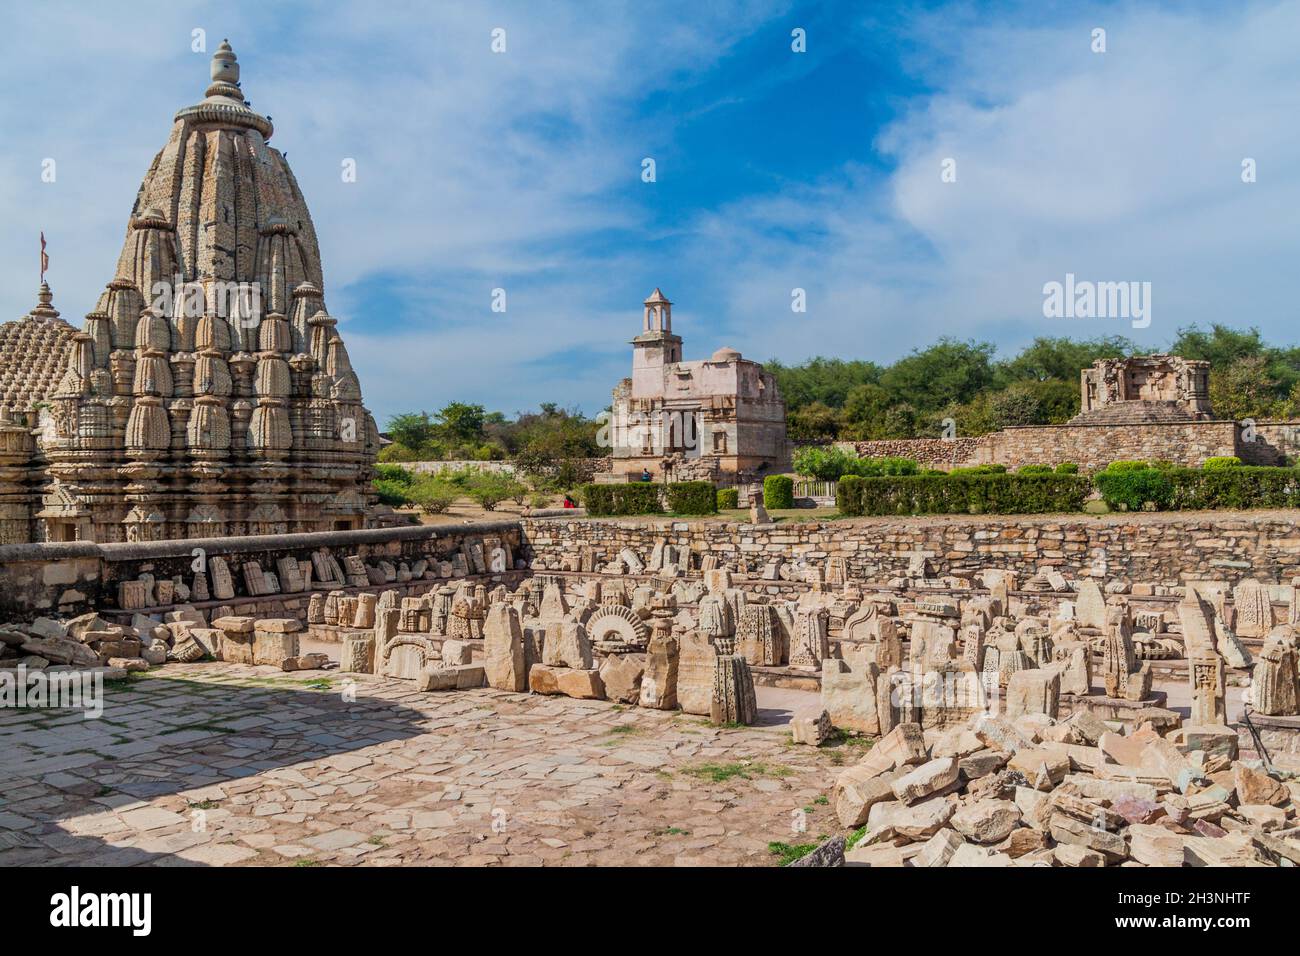 Sati Steine bei Mahasati im Chittor Fort in Chittorgarh, Rajasthan Staat, Indien Stockfoto